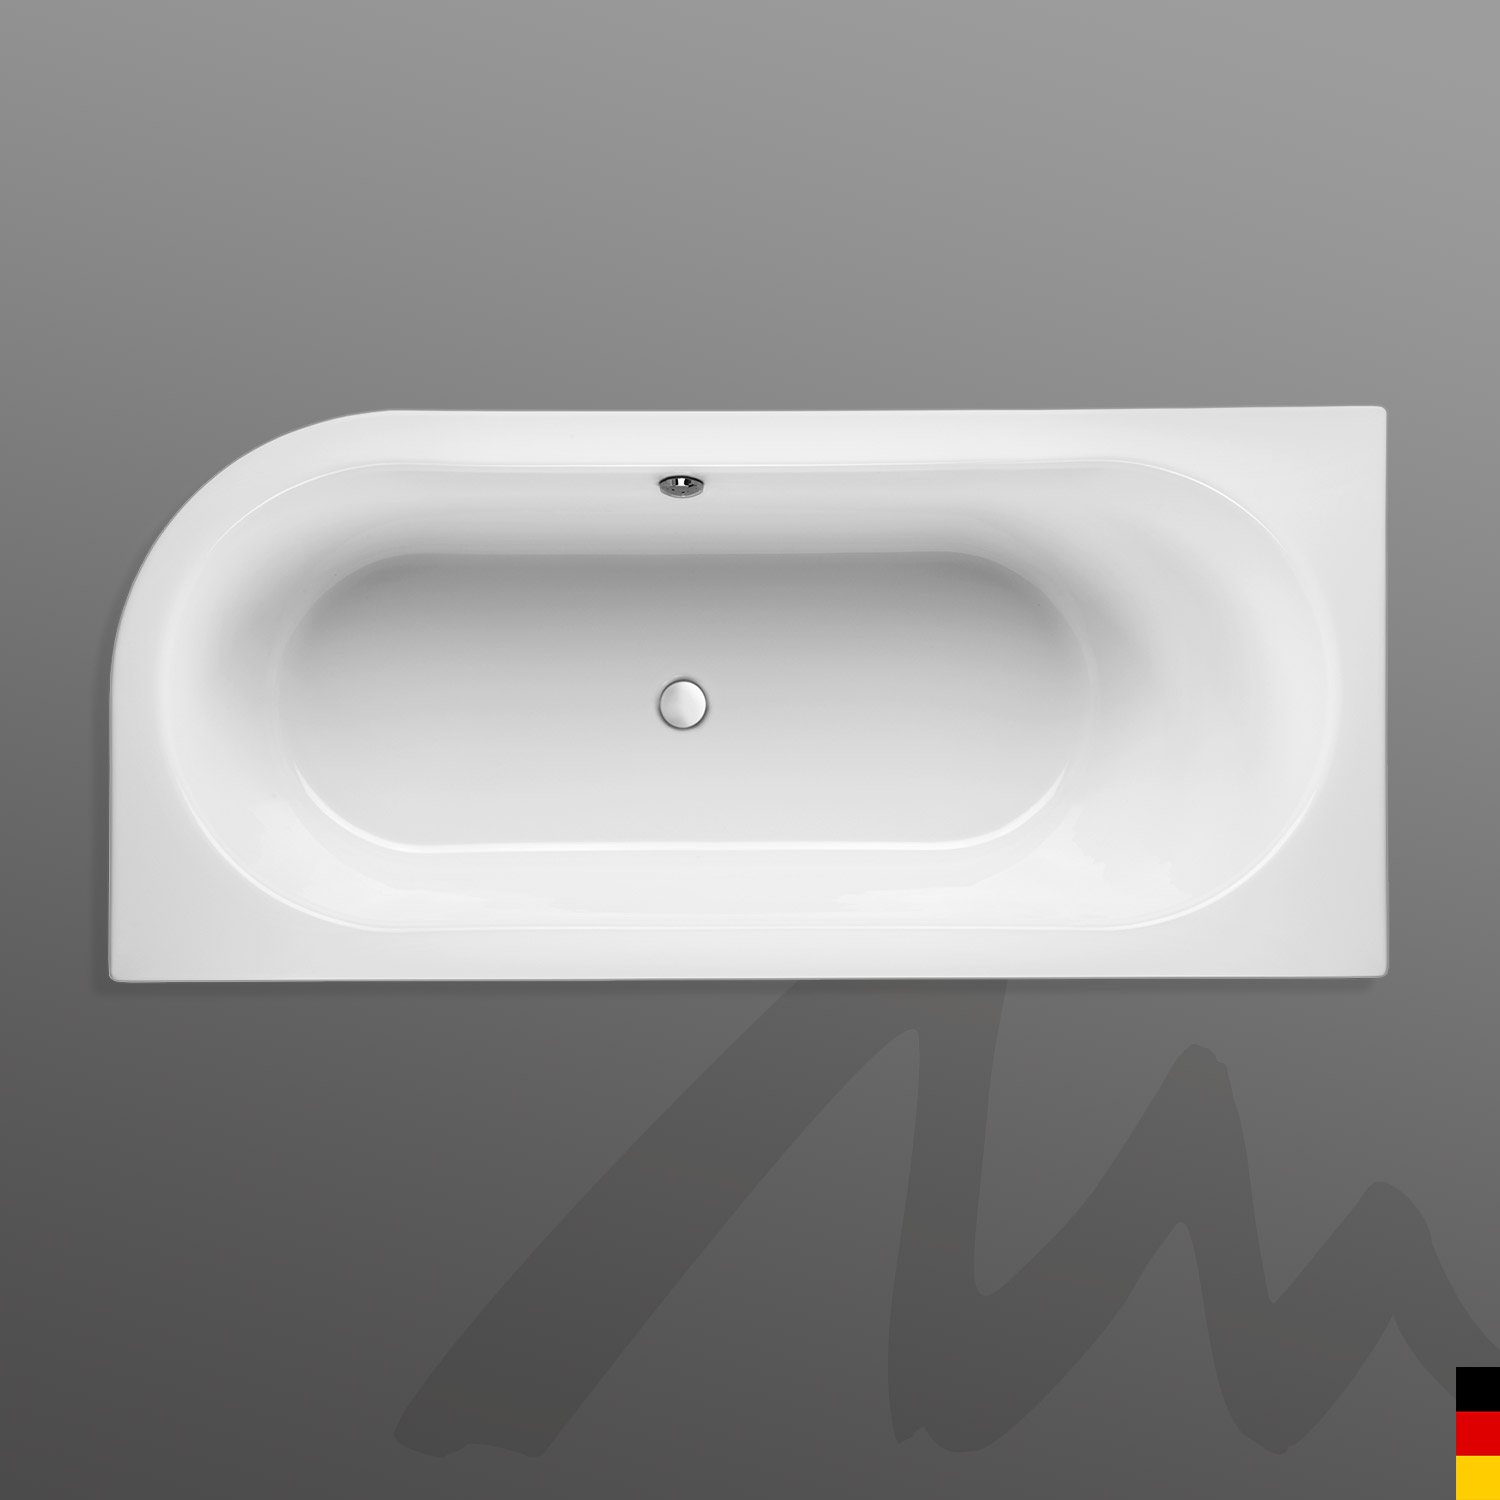 Mauersberger Badewanne Oval Primo 1 - 180/80 uno Ausführung links mit Acryl-Schürze/Panel  180x80x45  Farbe:weiß